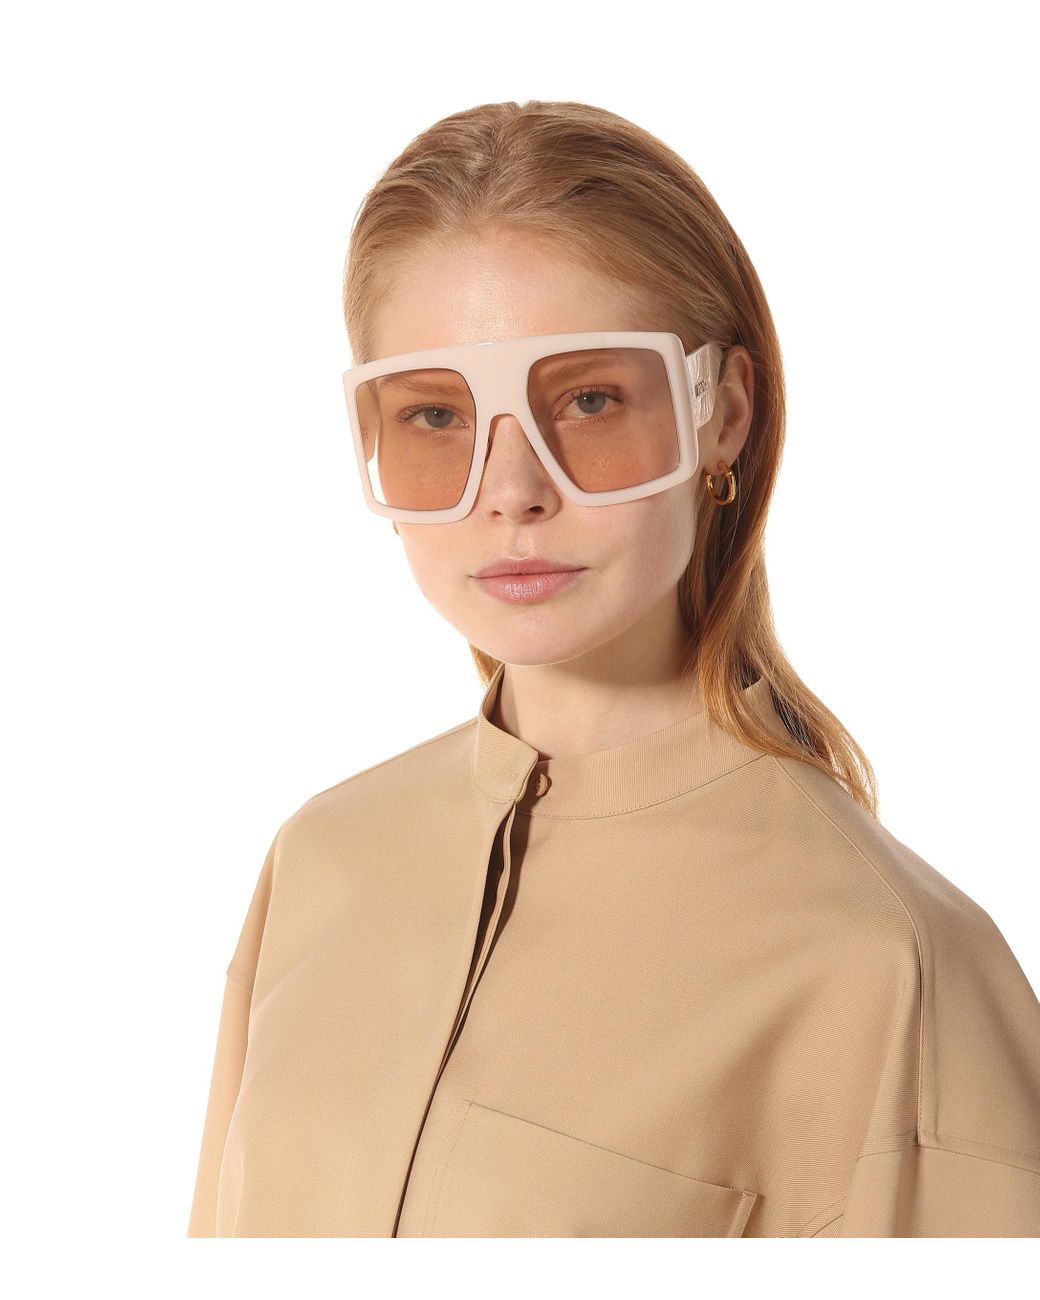 Dior Solight 2 sunglasses - Women's accessories